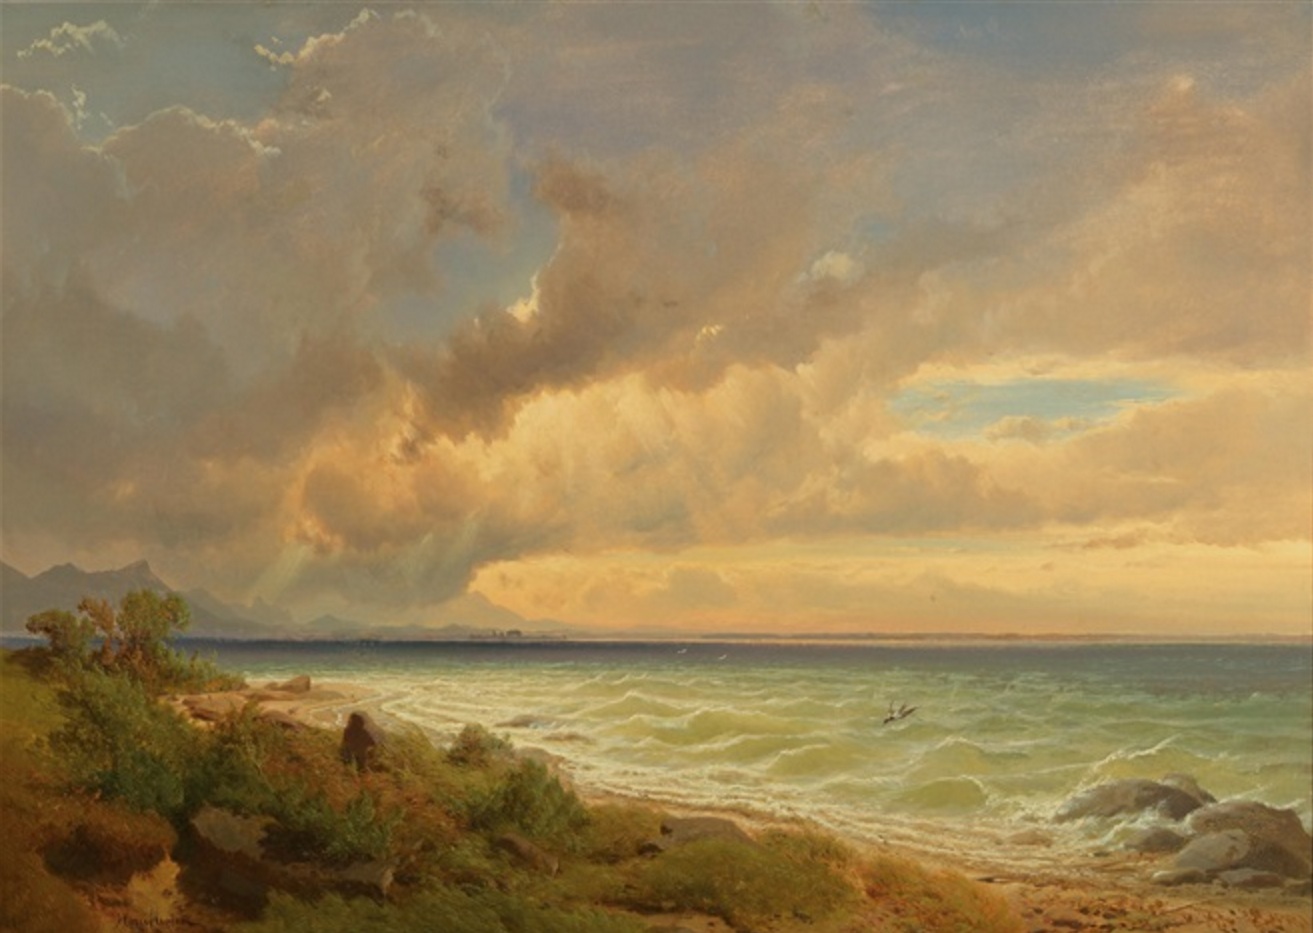 Maxmilián Haushofer: Chiemsee od východu před bouřkou, olej na plátně, 69 x 95 cm cena: 56 250 eur  Dorotheum Vídeň 21. 4. 2016